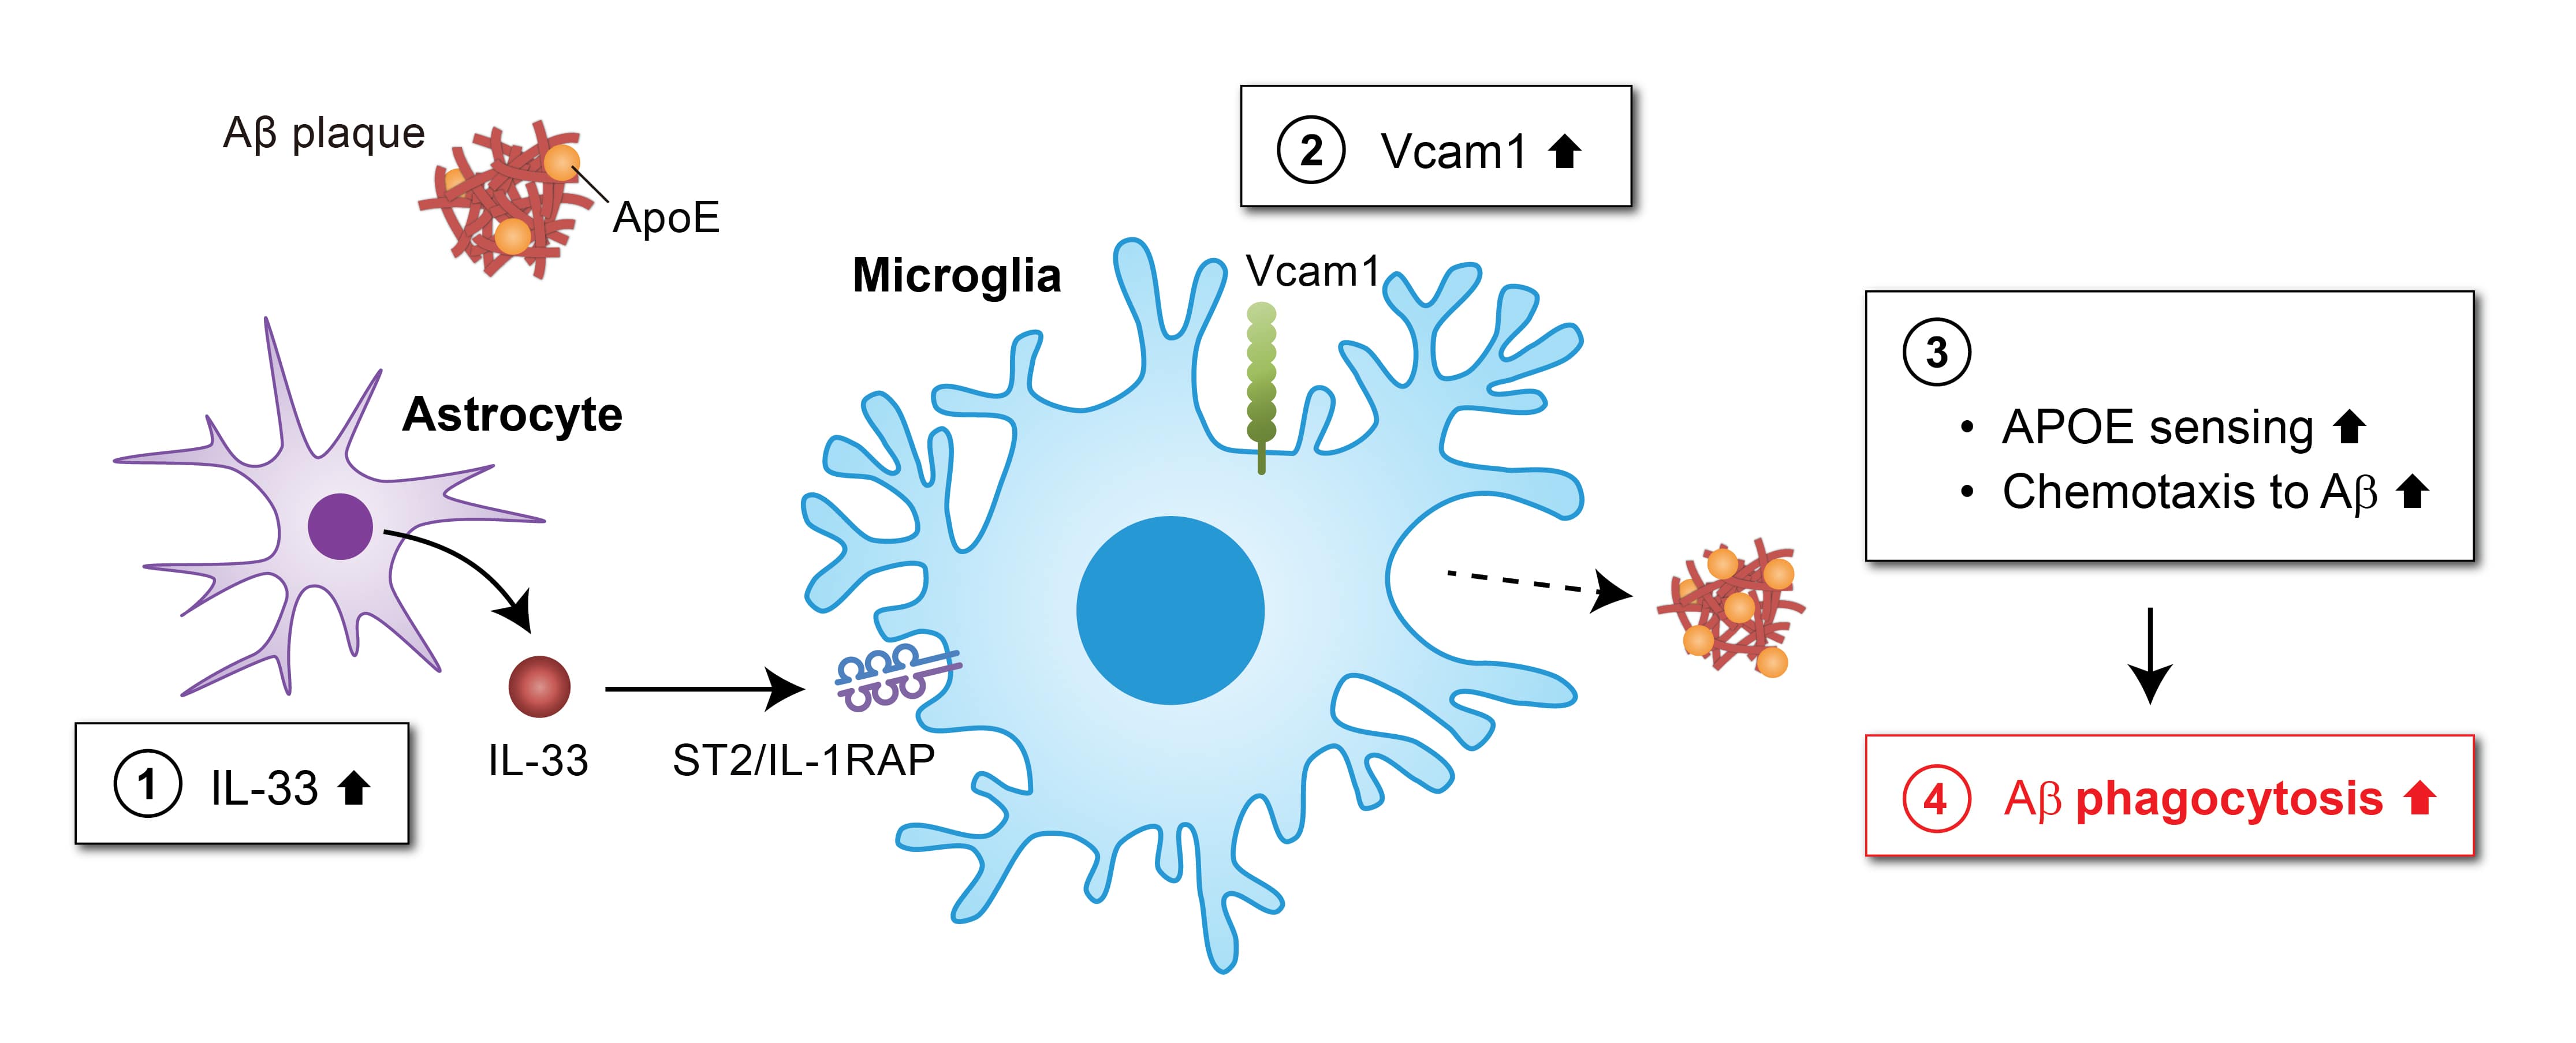 該圖闡明了VCAM1-APOE信號通路可作為阿爾茲海默症的潛在治療靶點。白介素33（IL-33）增加小膠質細胞中VCAM1的表達 (2)，誘導小膠質細胞向與APOE相結合的澱粉樣蛋白（Aβ）沉積遷移 (3)，從而促進小膠質細胞對大腦中Aβ斑塊的清除 (4)。